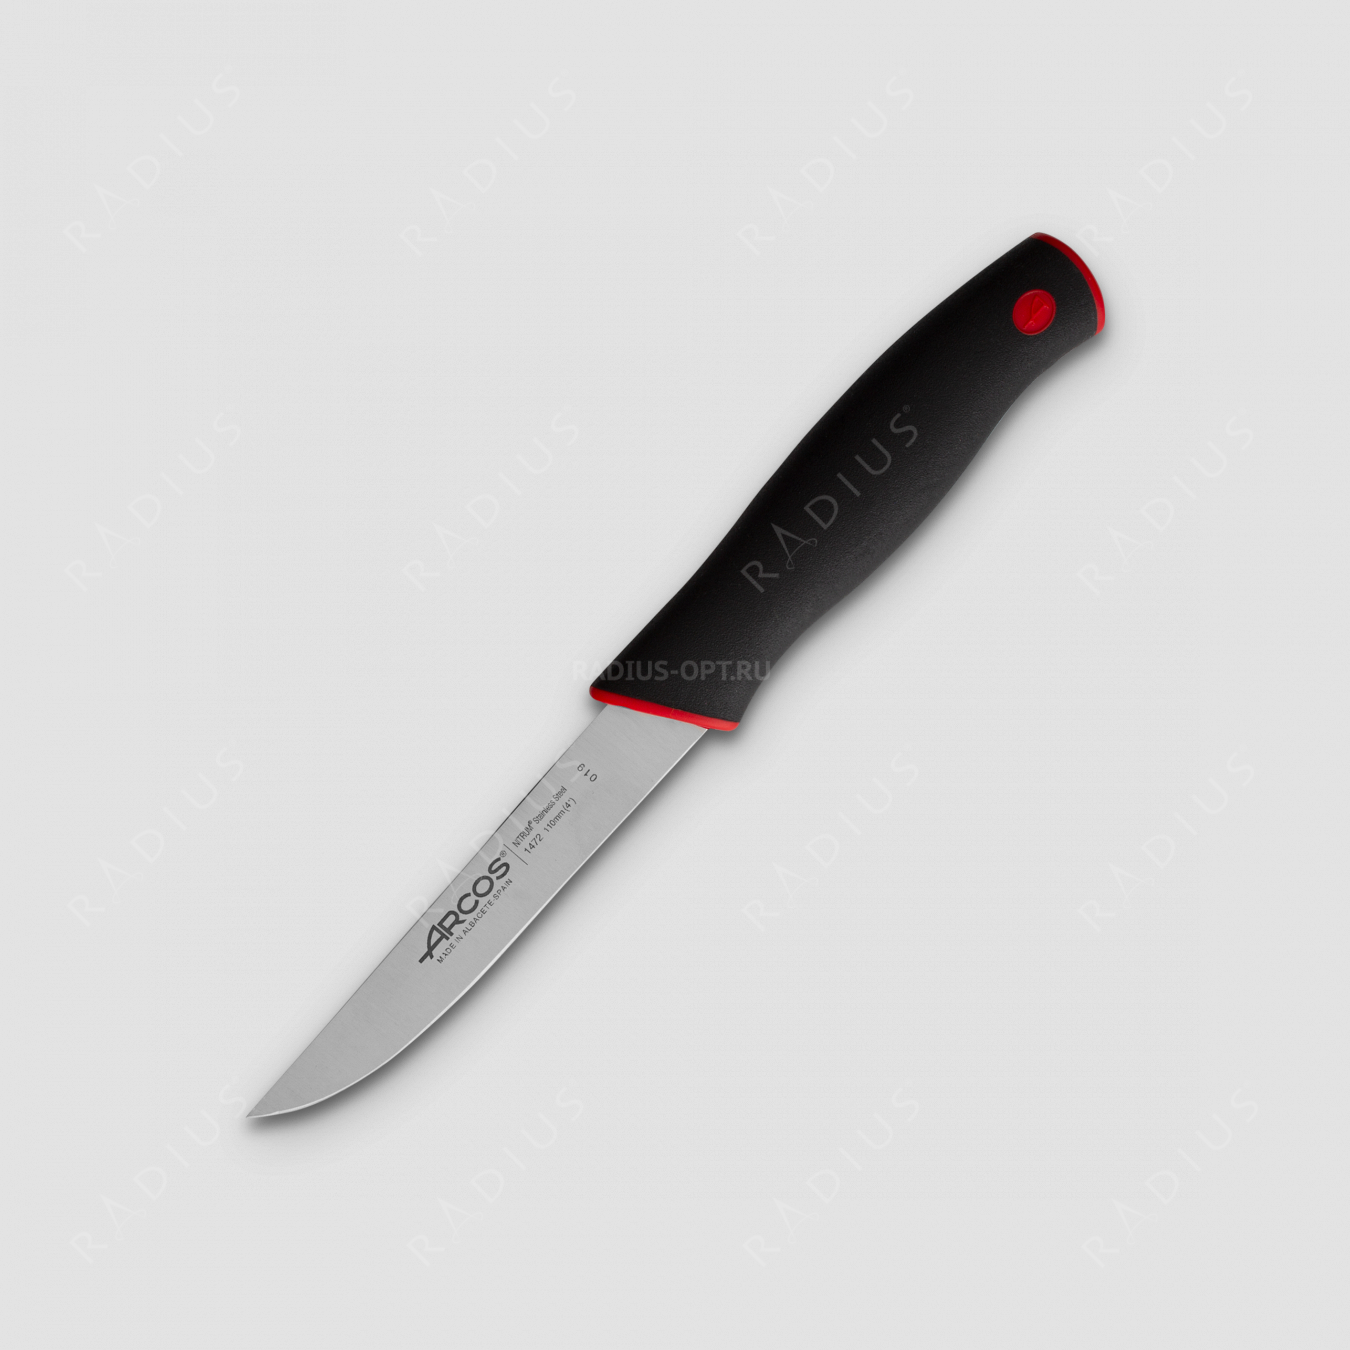 Нож кухонный для овощей 11 см, серия Duo, ARCOS, Испания